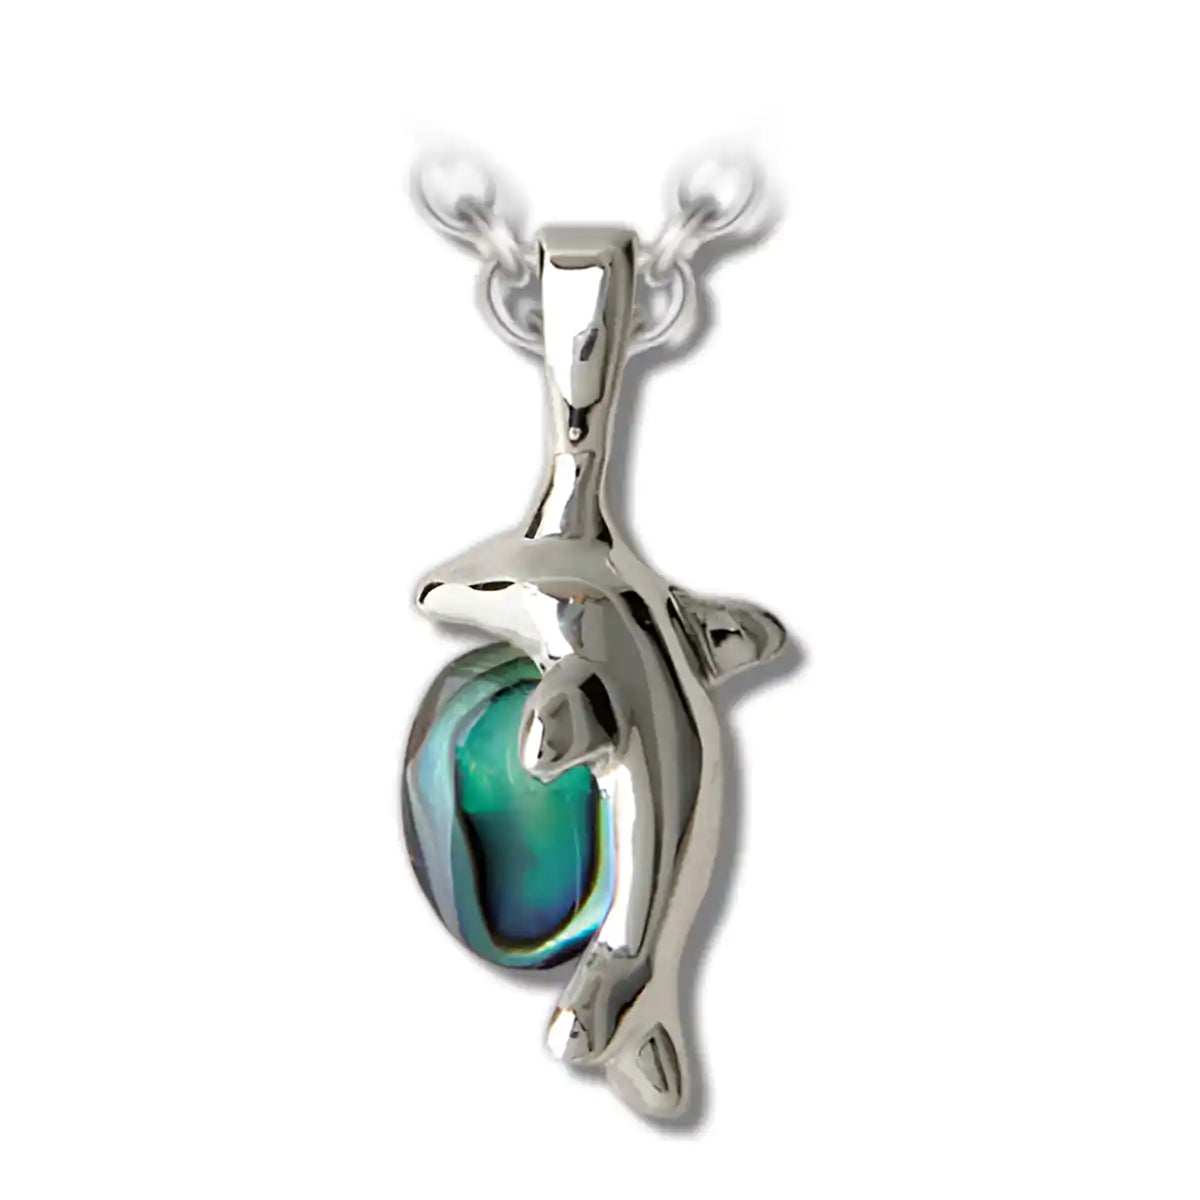 Glacier pearle dolphin necklace